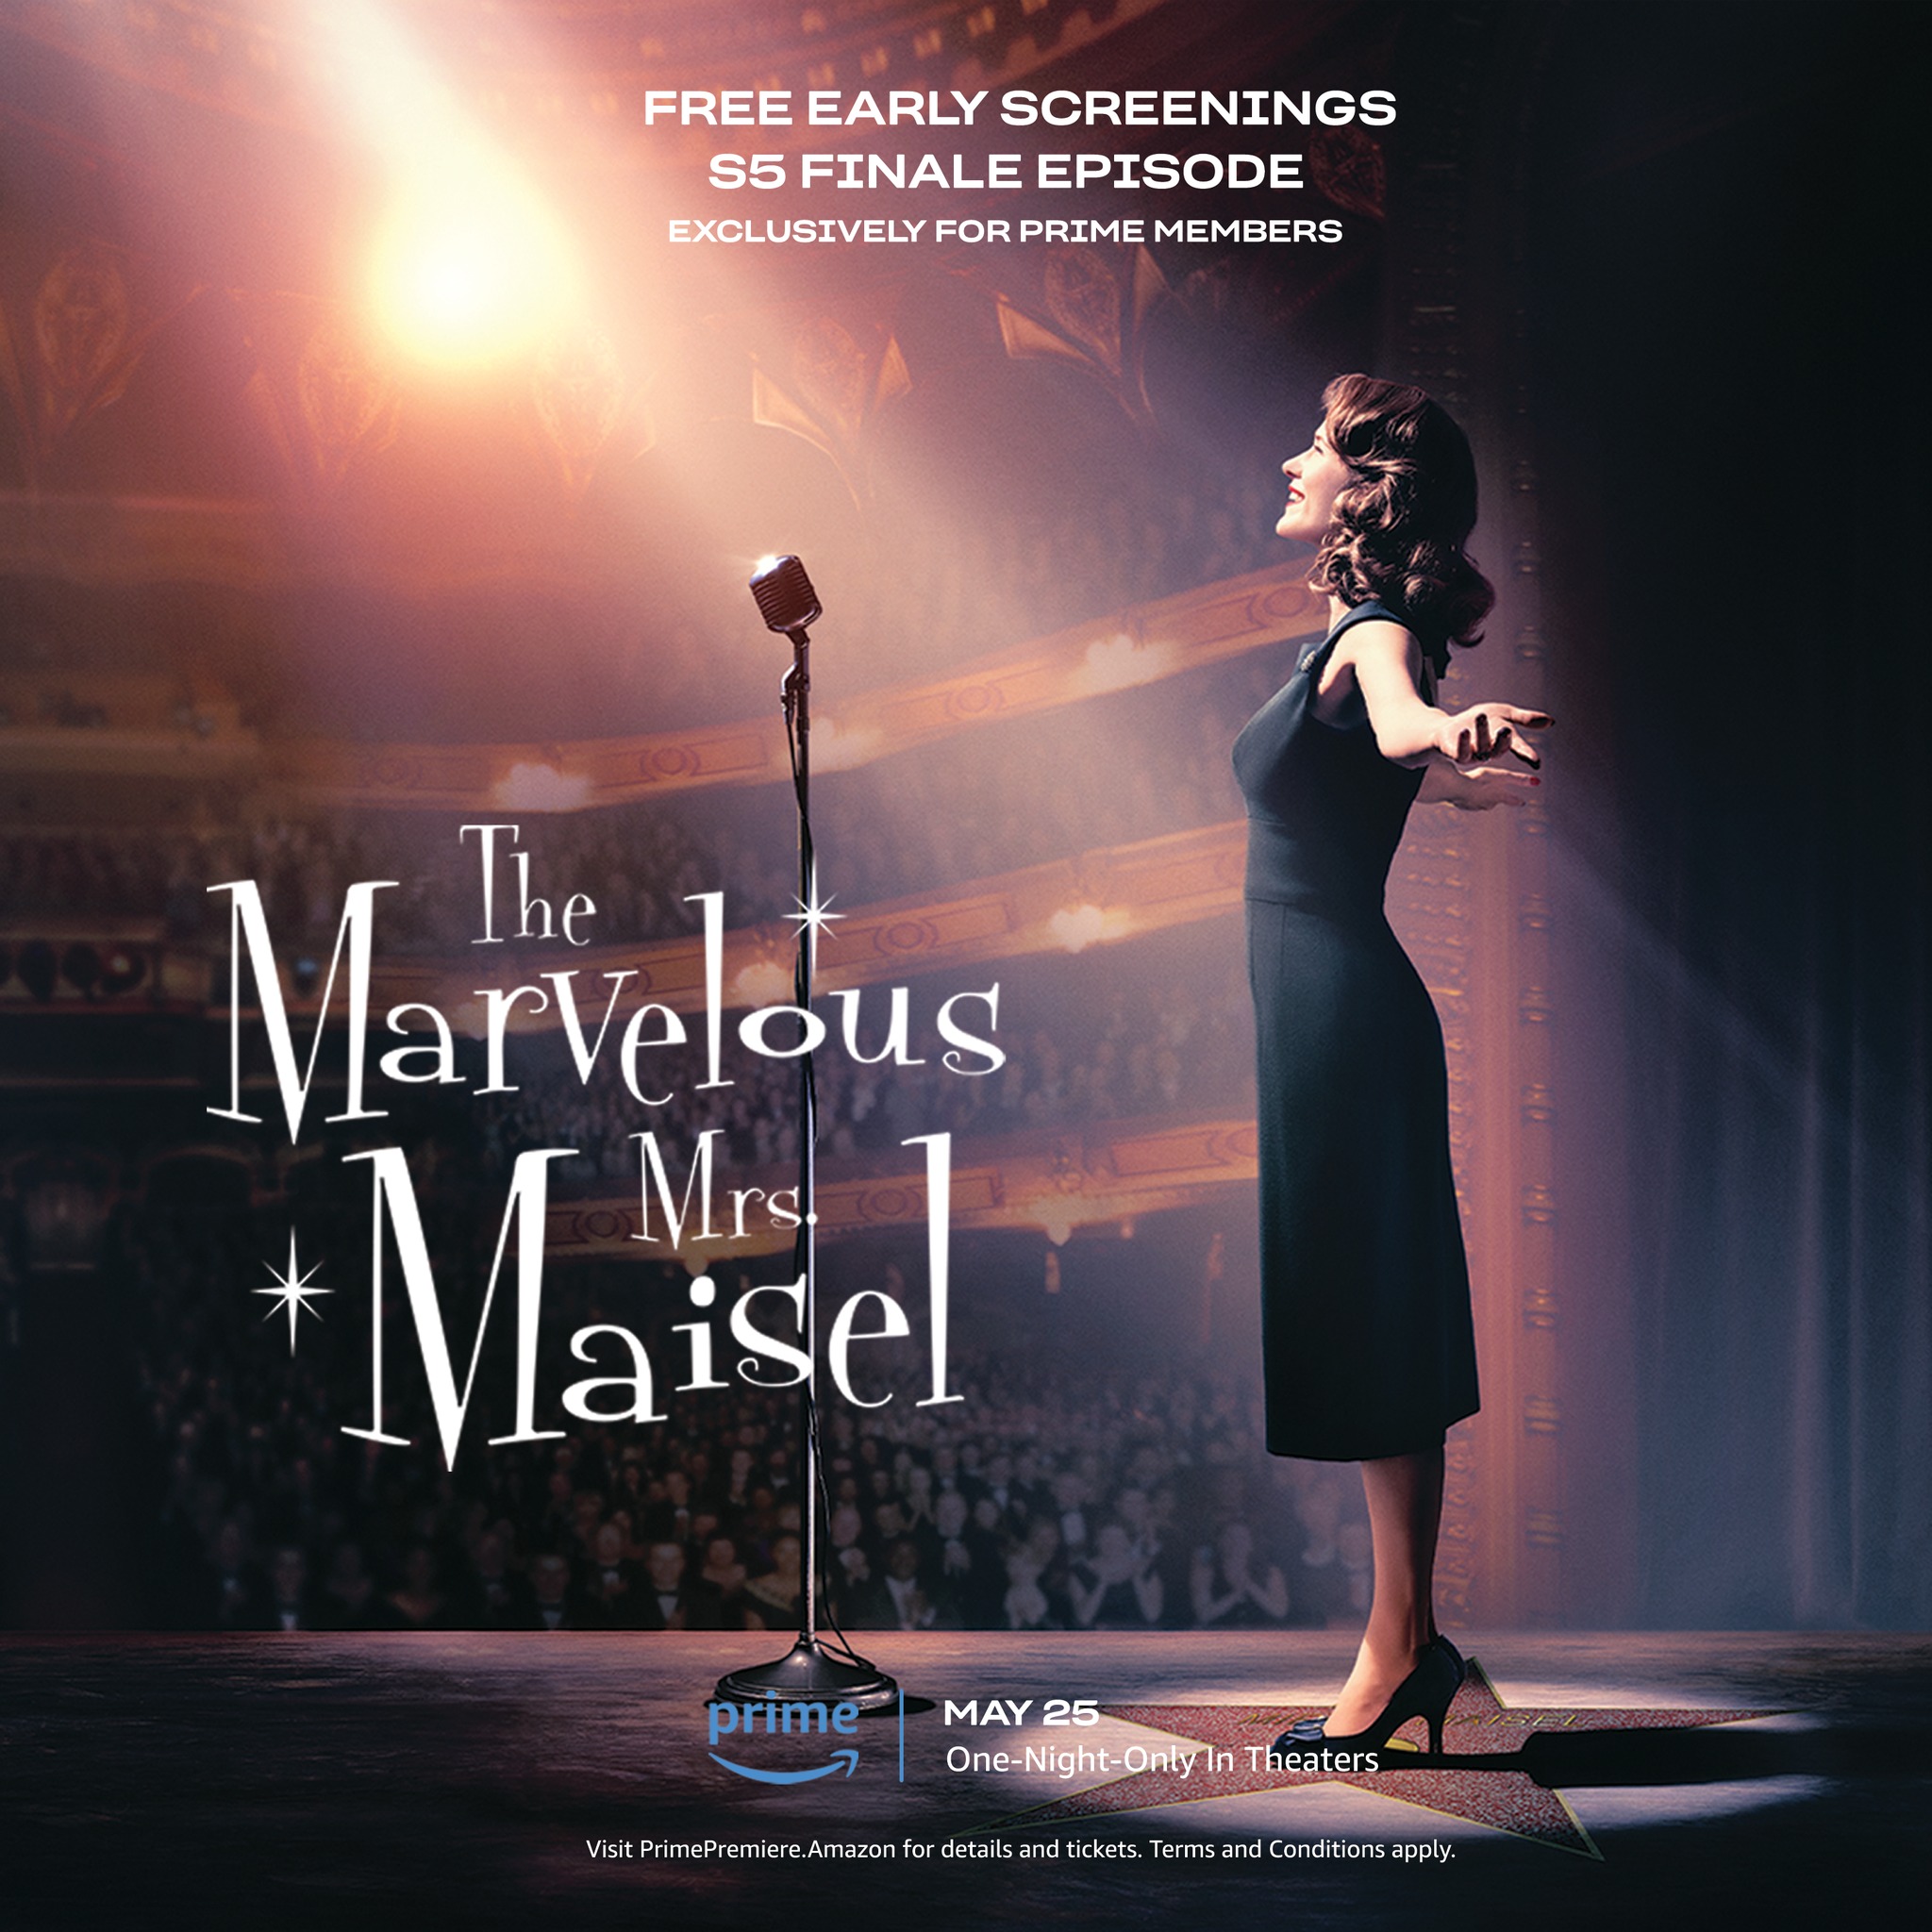 Marvelous Mrs. Maisel Season 6 Release Date